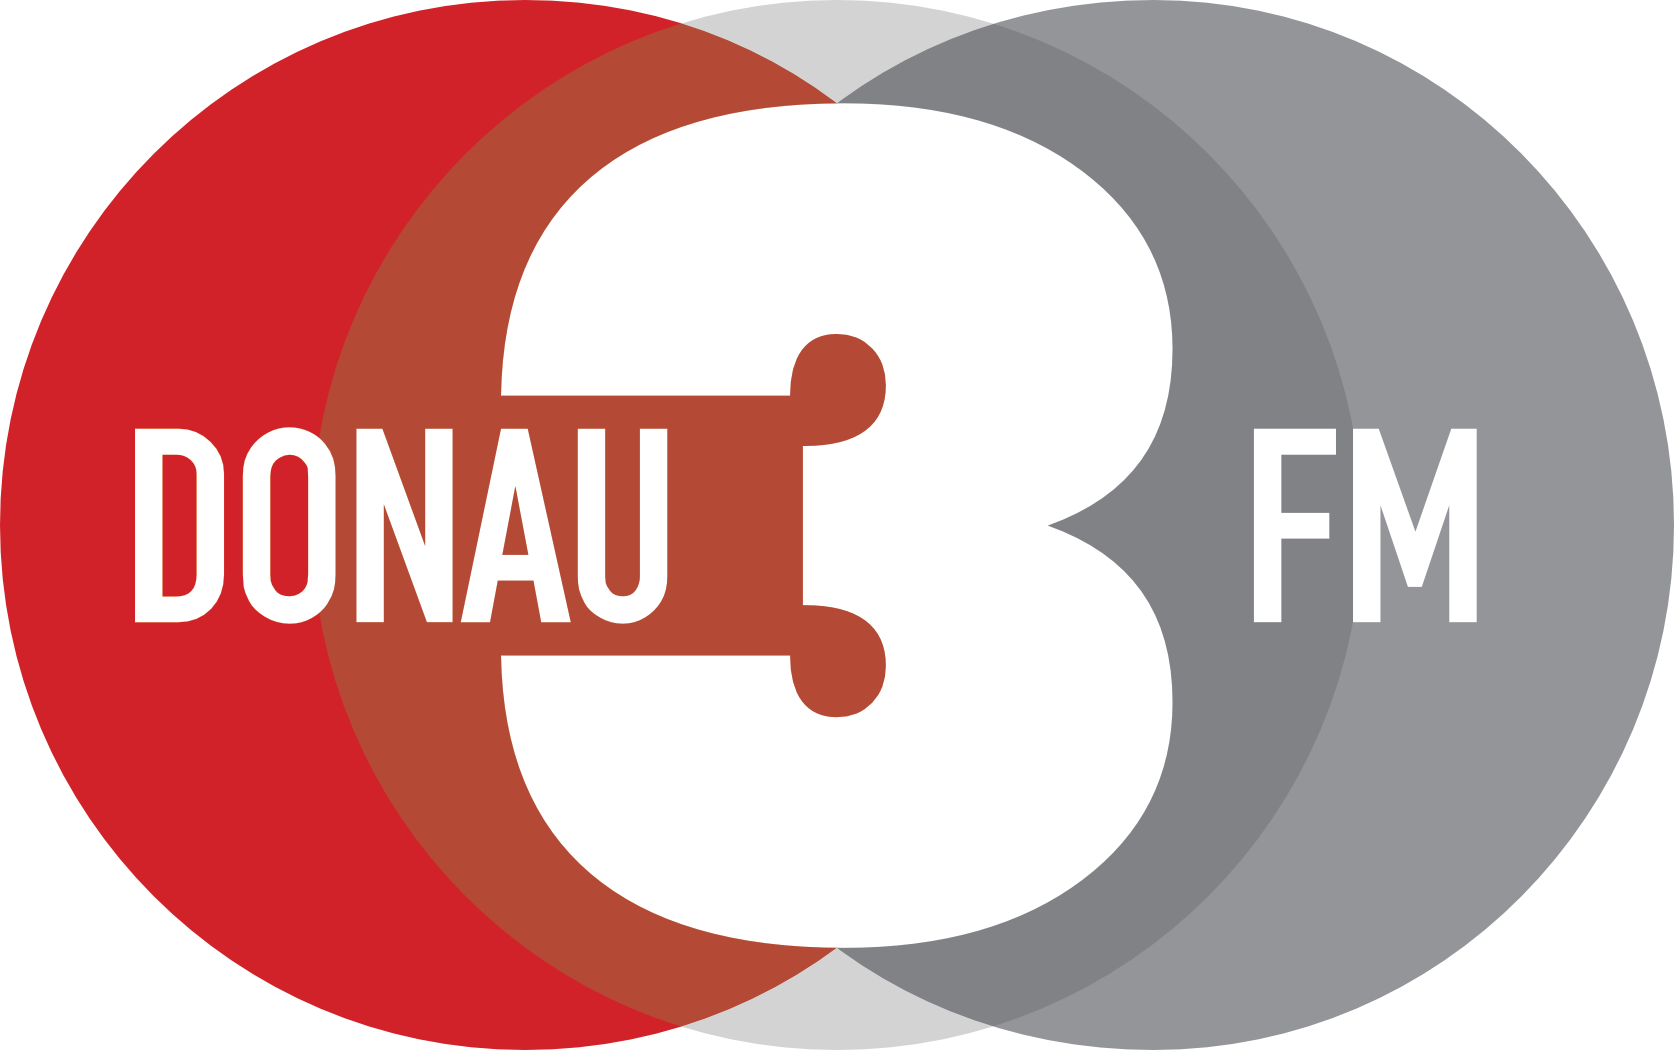 DONAU 3 FM"